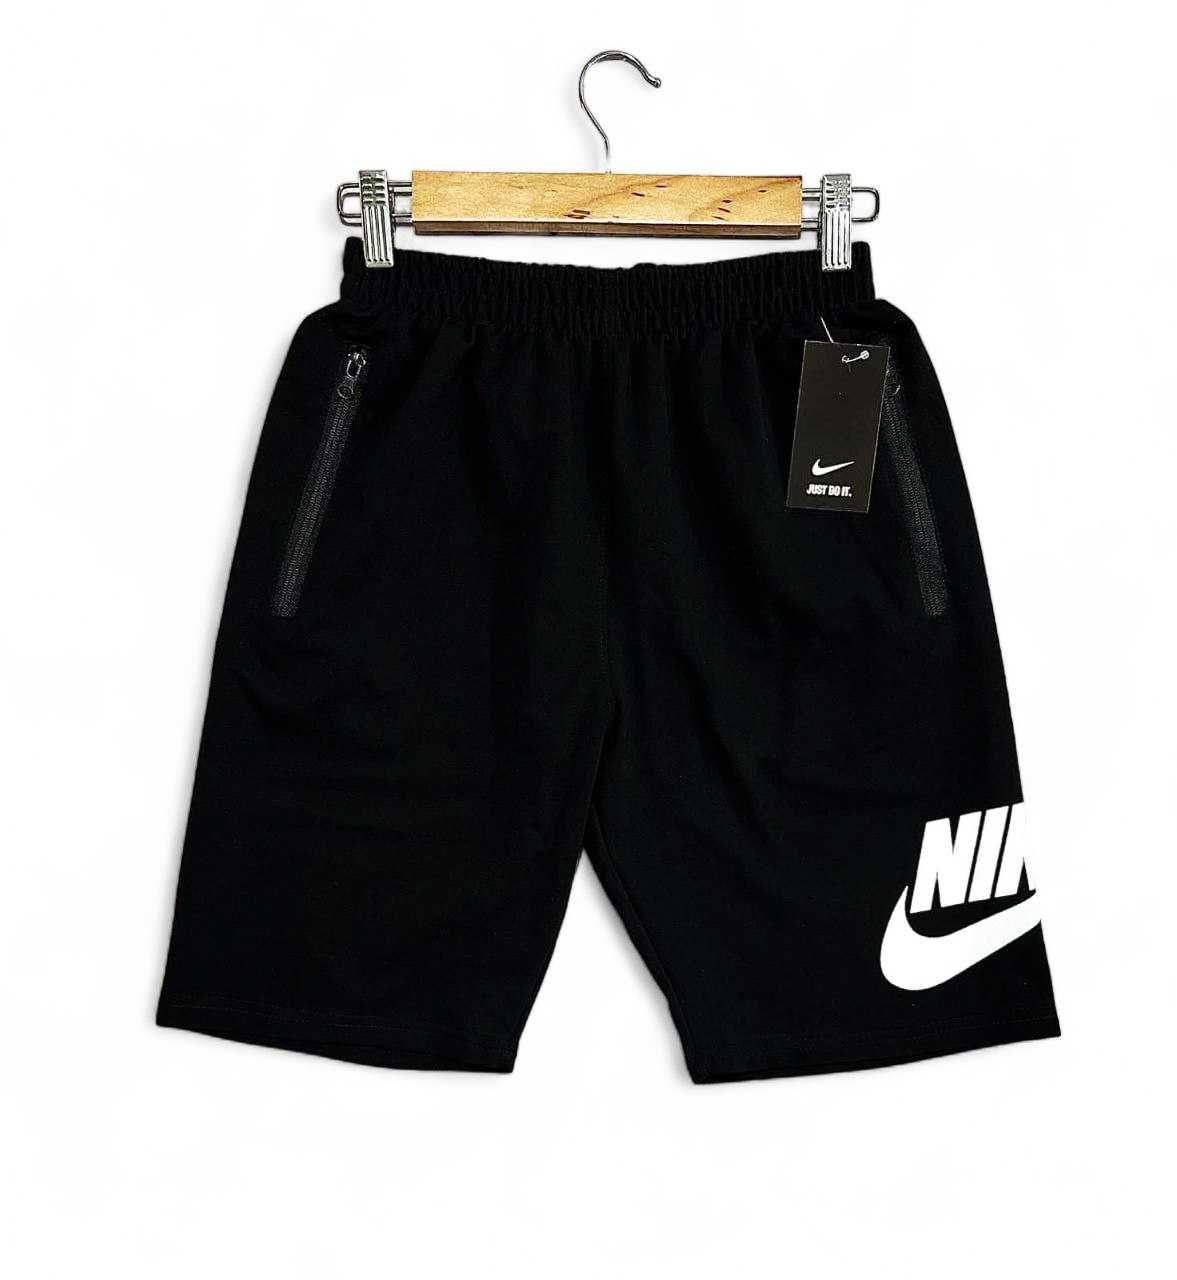 Літній чоловічий комплект Nike футболка + шорти чорний Найк